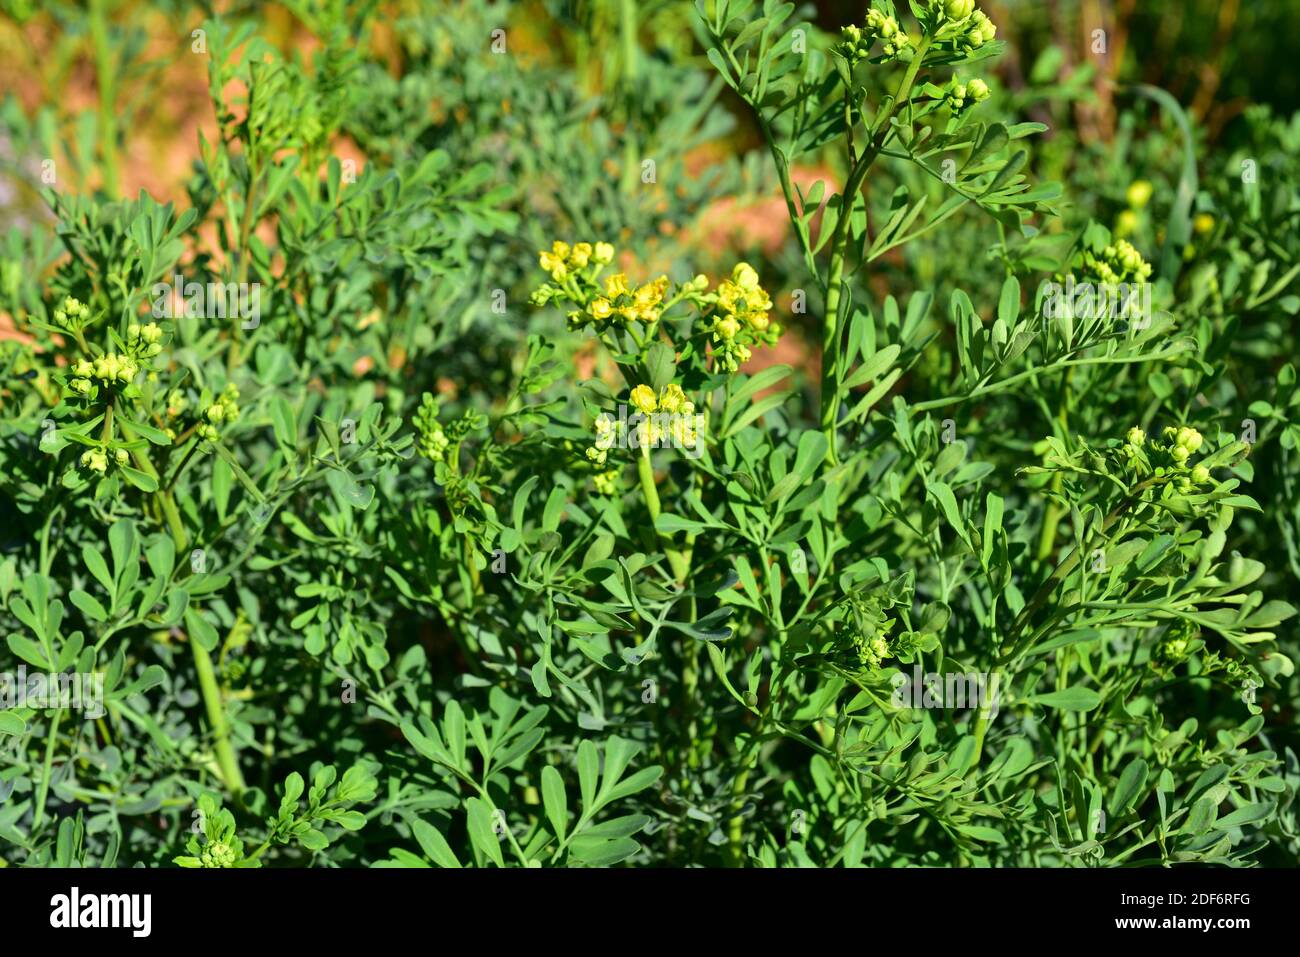 La rue commune (Ruta graveolens) est une plante vivace et toxique originaire de péninsule des Balkans. Fleurs et feuilles Photo Stock - Alamy